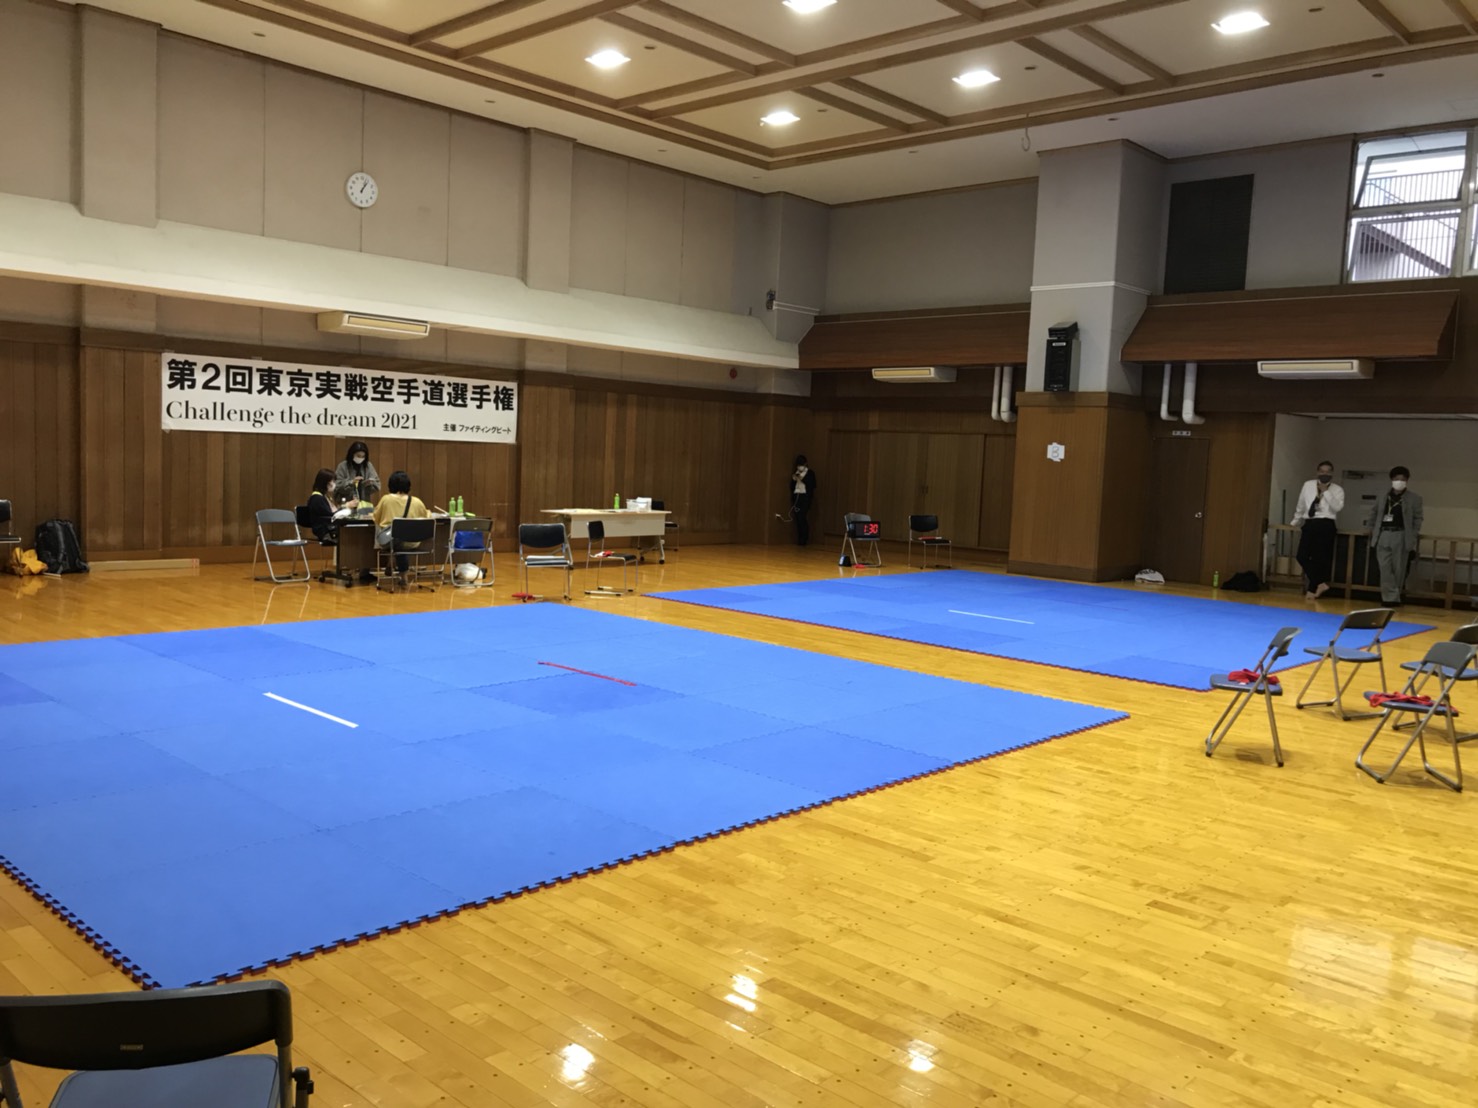 江戸川区スポーツセンターにてジョイントマットがレンタルされました。実際に設置した様子の写真。